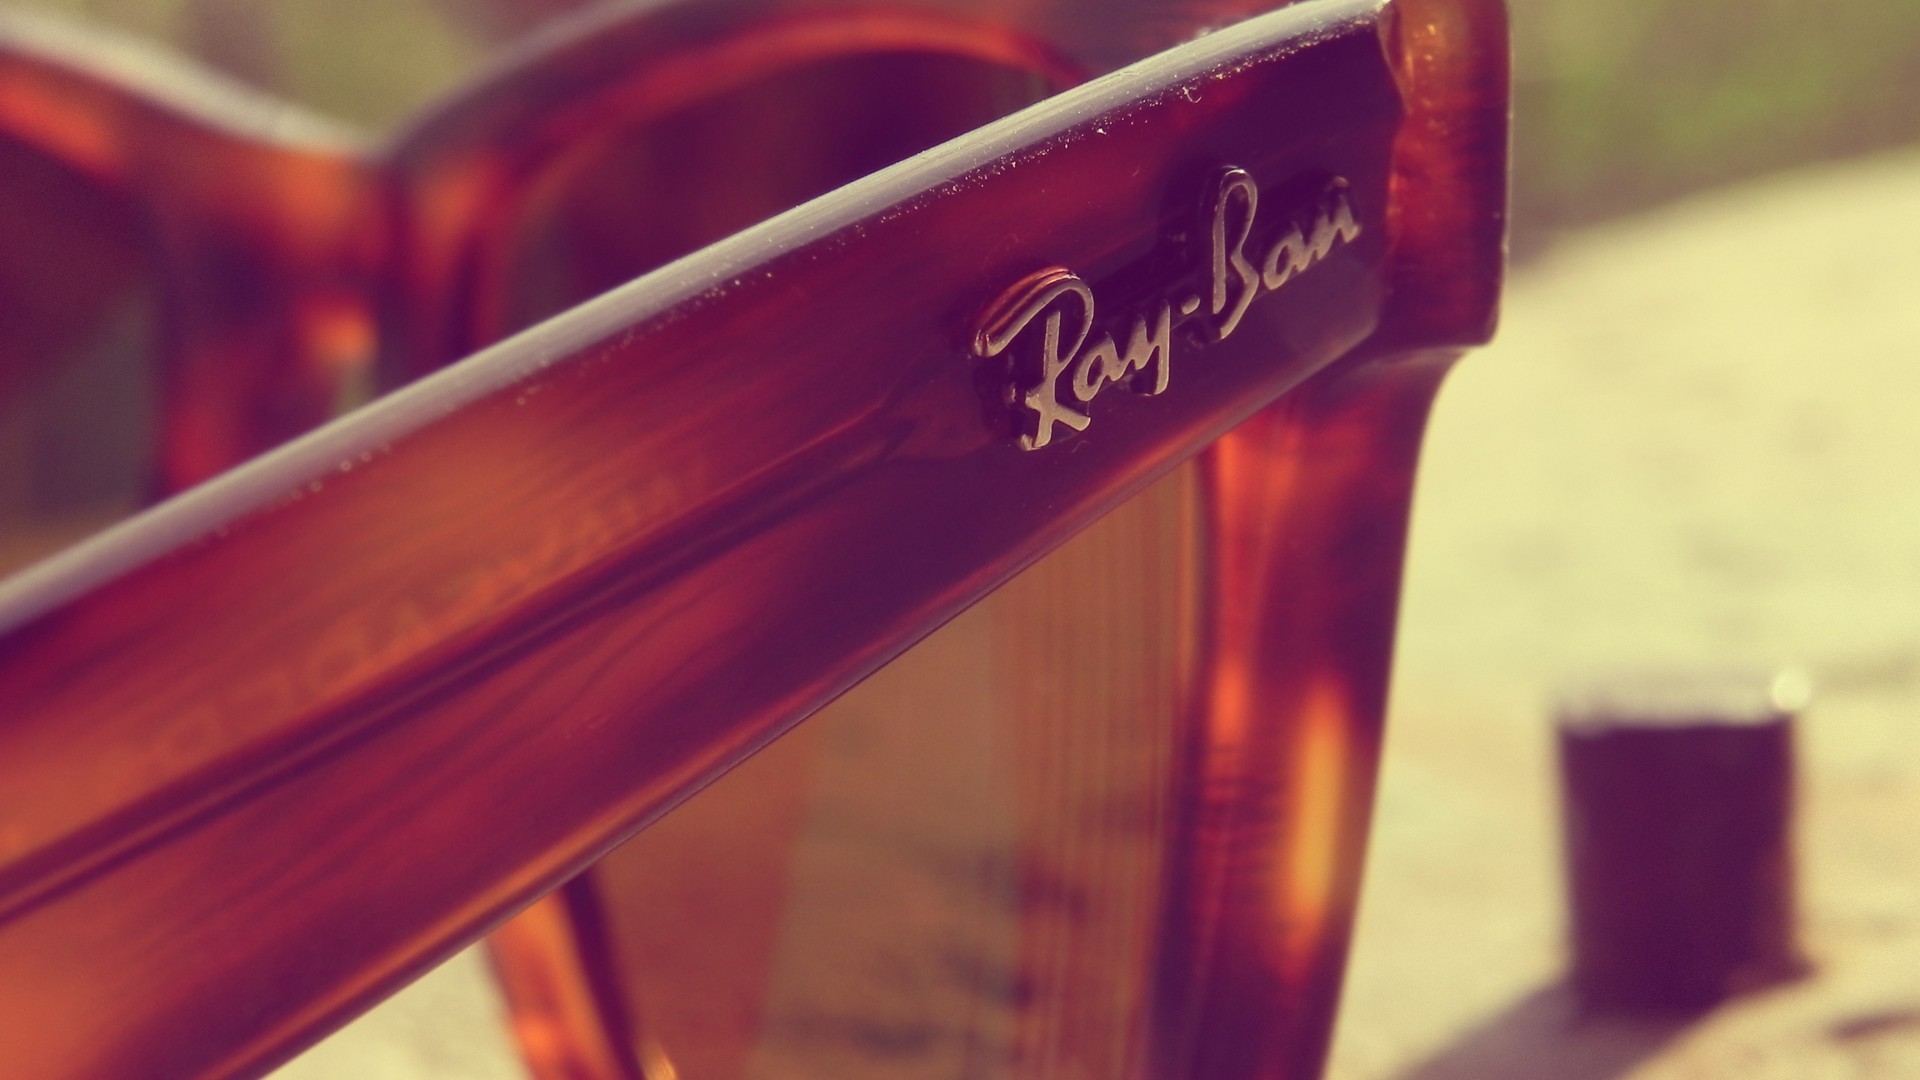 Glasses Ray Ban Sunglasses 1920x1080